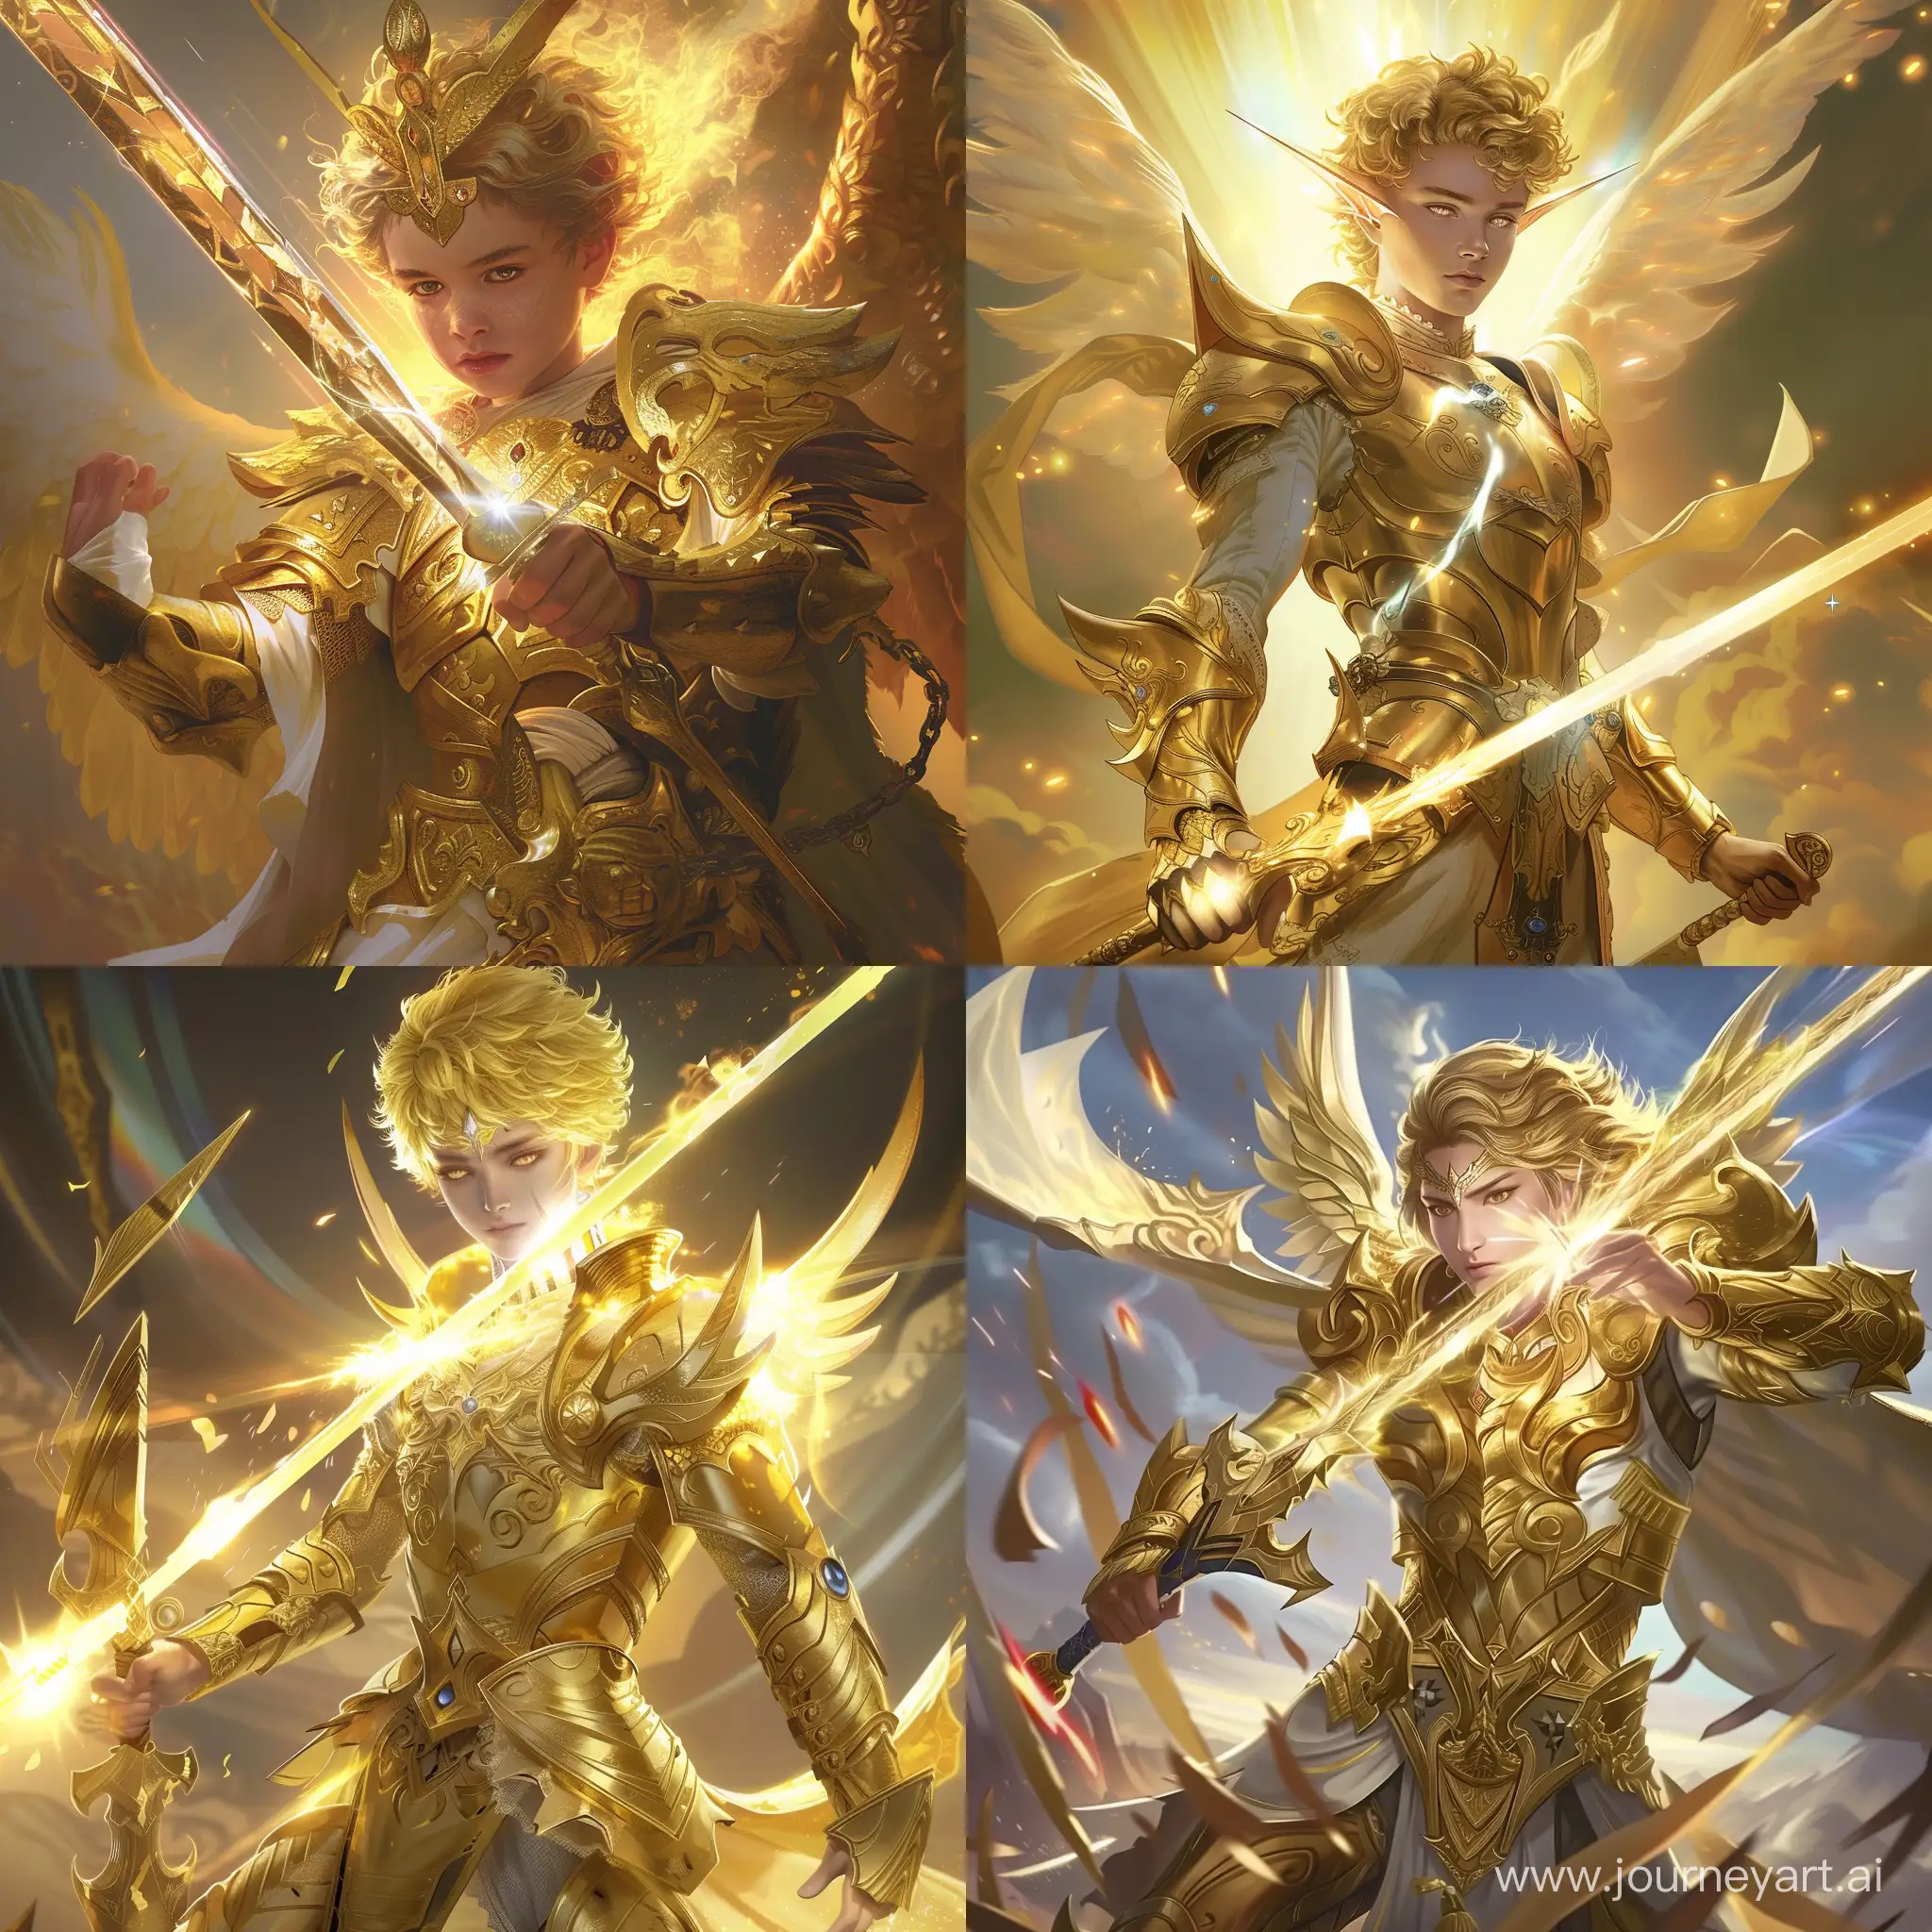 юный бог света с ослепительным мечом, золотыми волосами и в золотых латах